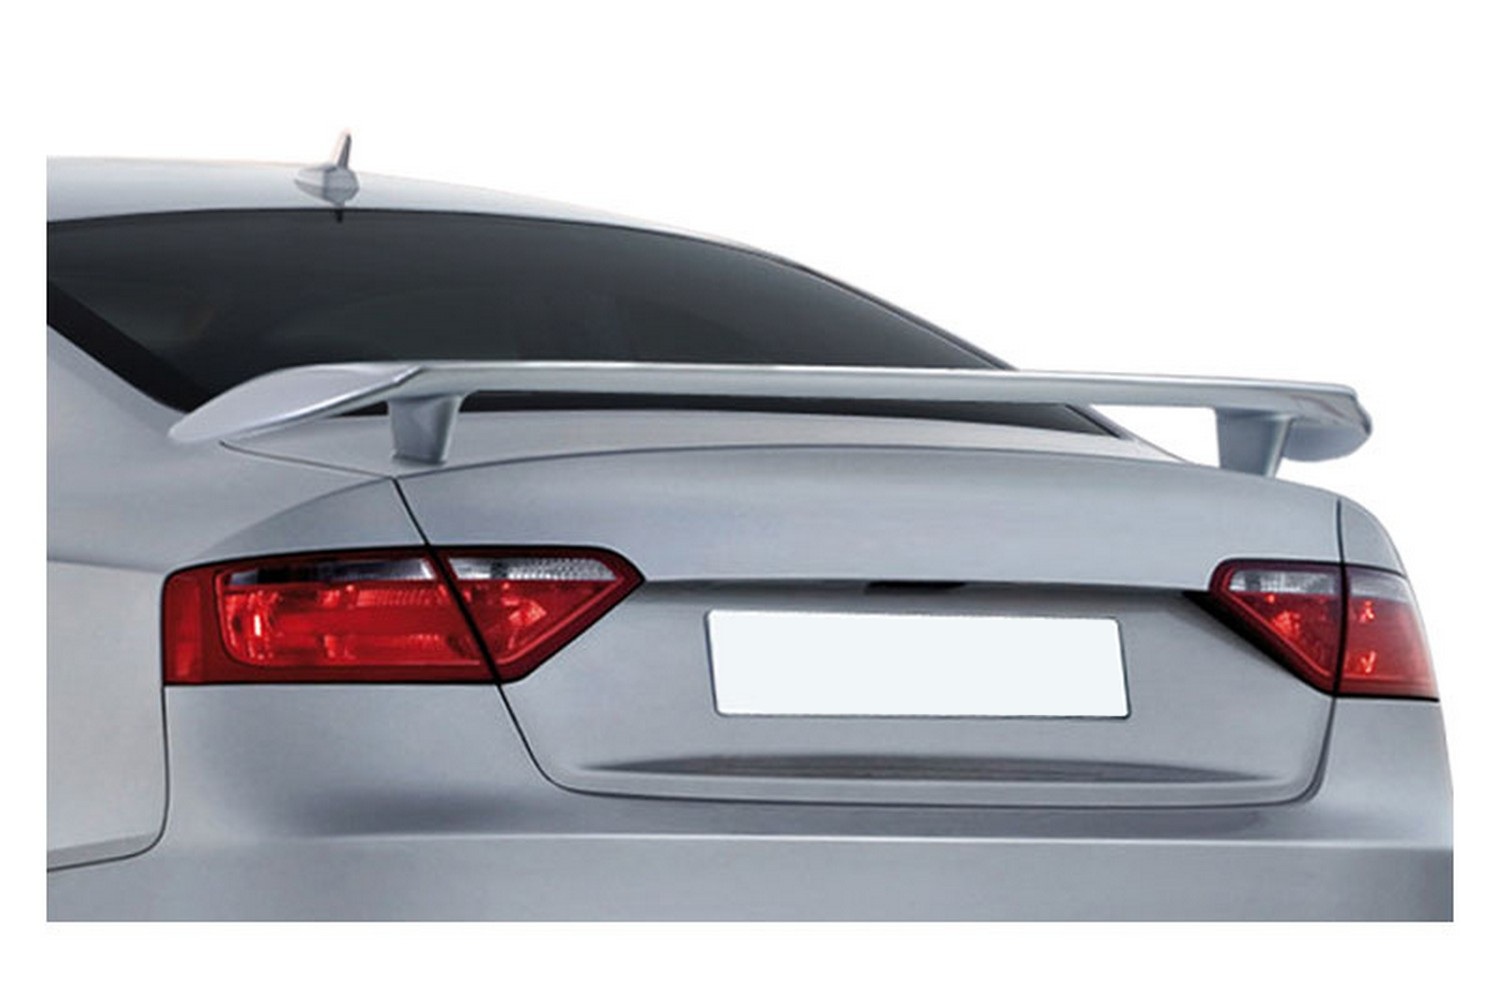  High Side Cuir Tapis Coffre Voiture pour Audi A5 Sportback (F5)  2017-2020, Antidérapant Anti-Rayures Bac de Coffre ImerméAbles Cargaison  Tapis, Accessoires de Voiture, D/Beige